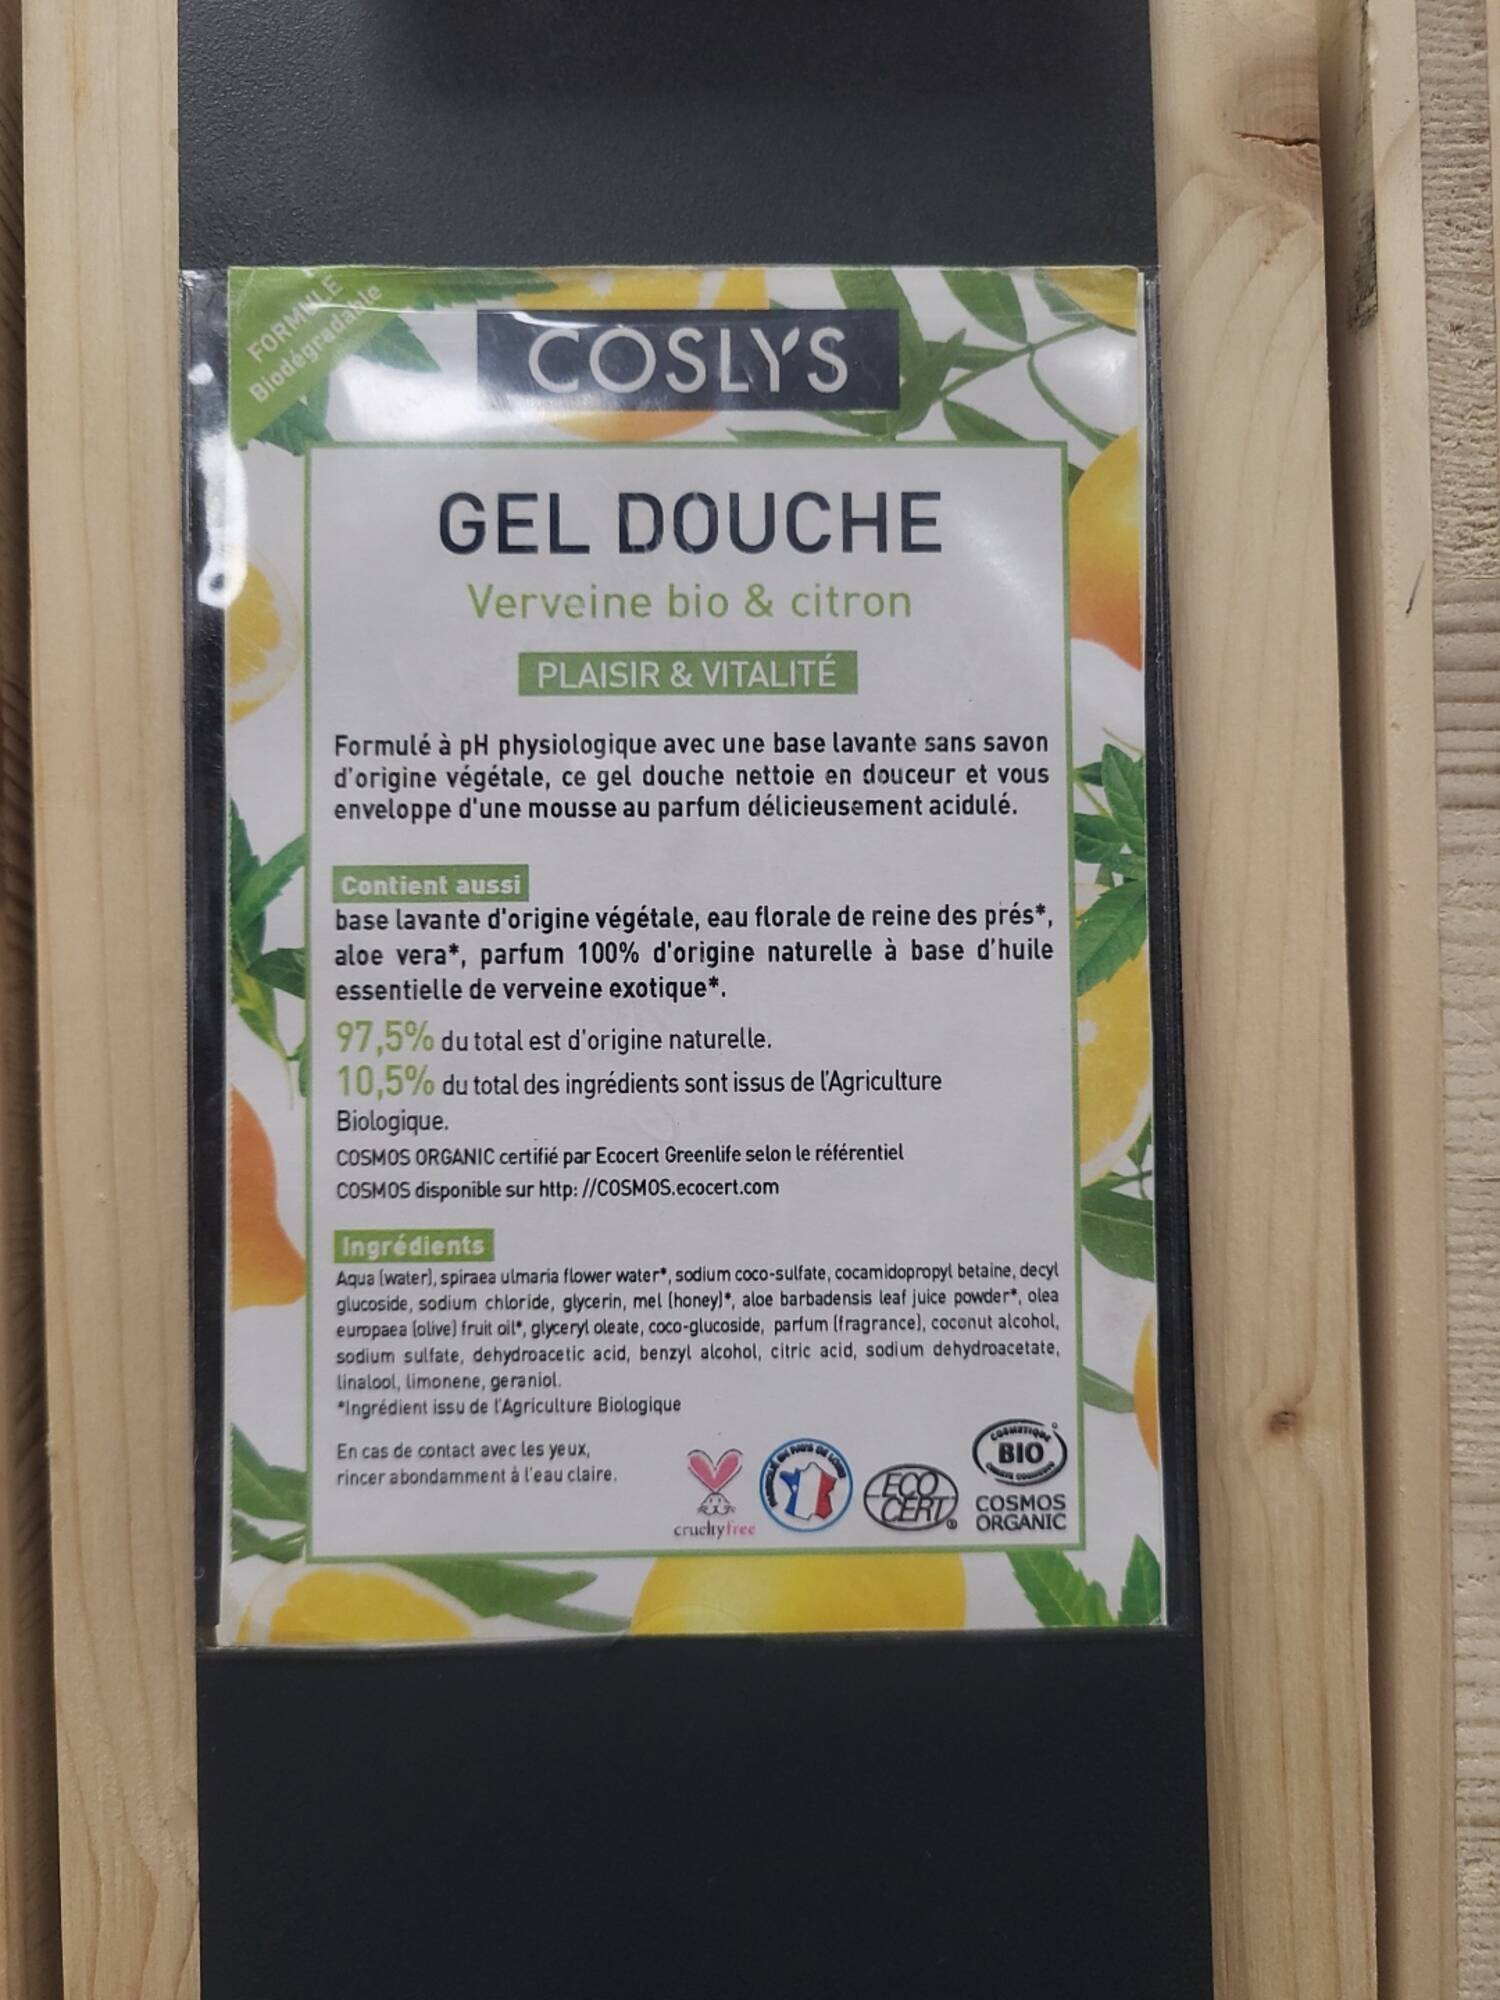 COSLYS - Gel douche verveine bio & citron